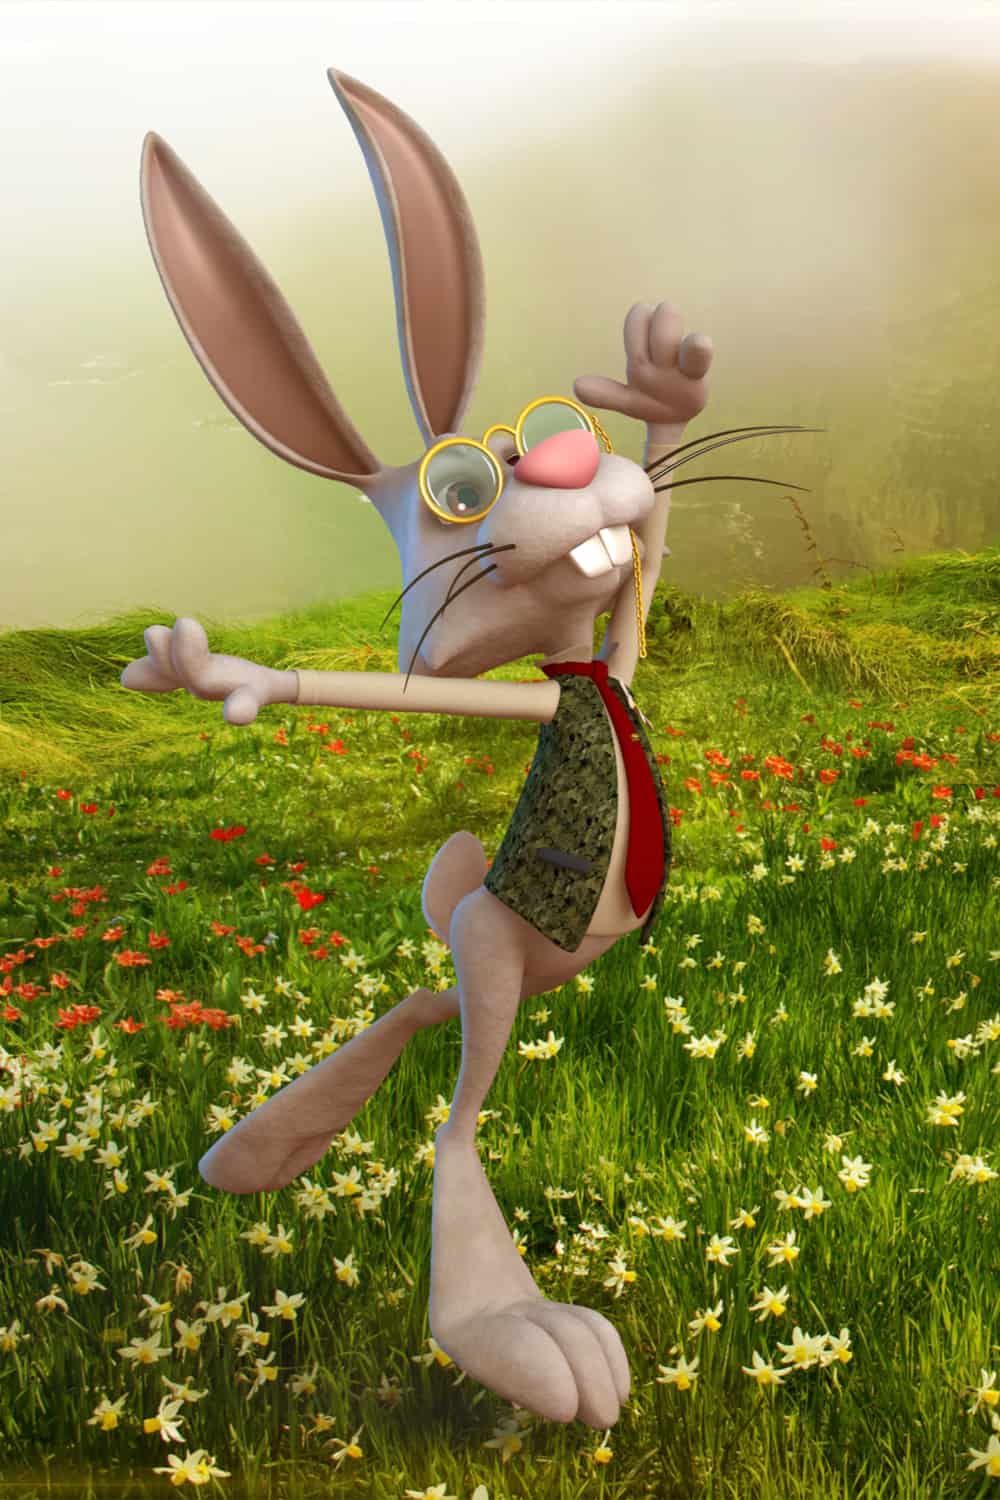 Mr. Bunny Rabbit